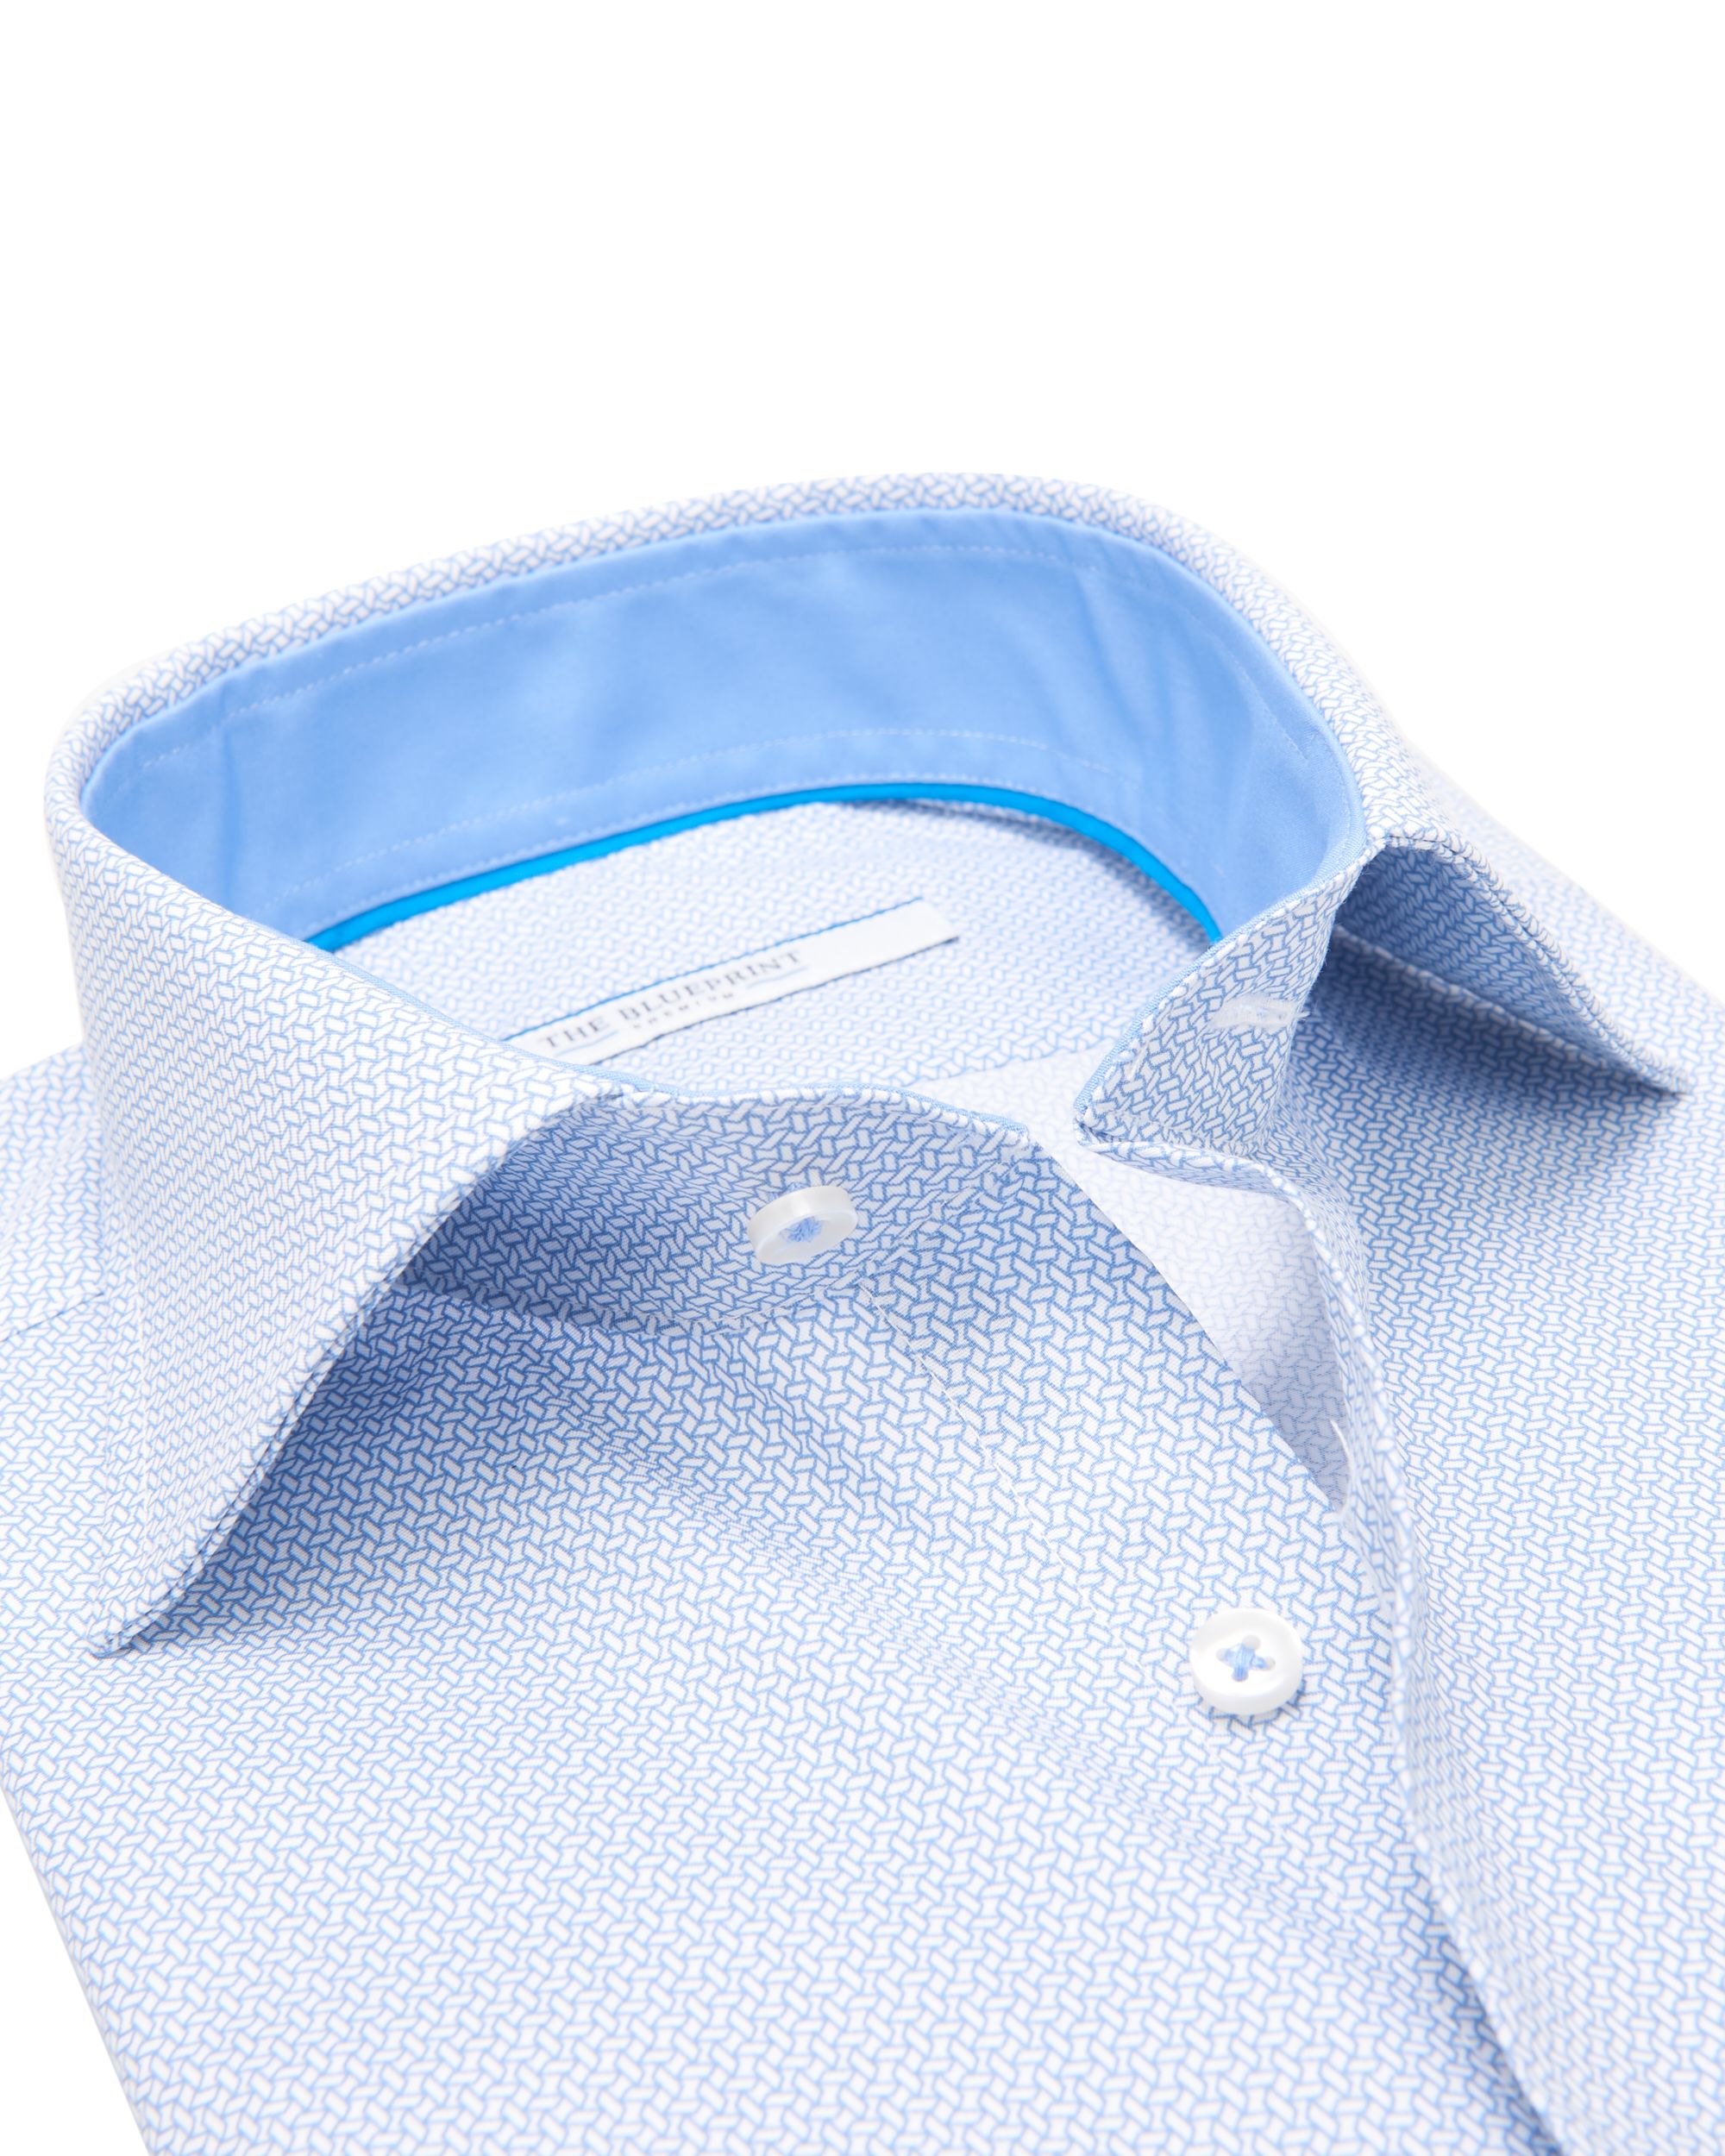 The BLUEPRINT Premium Trendy Overhemd LM Lichtblauw dessin 078182-001-L